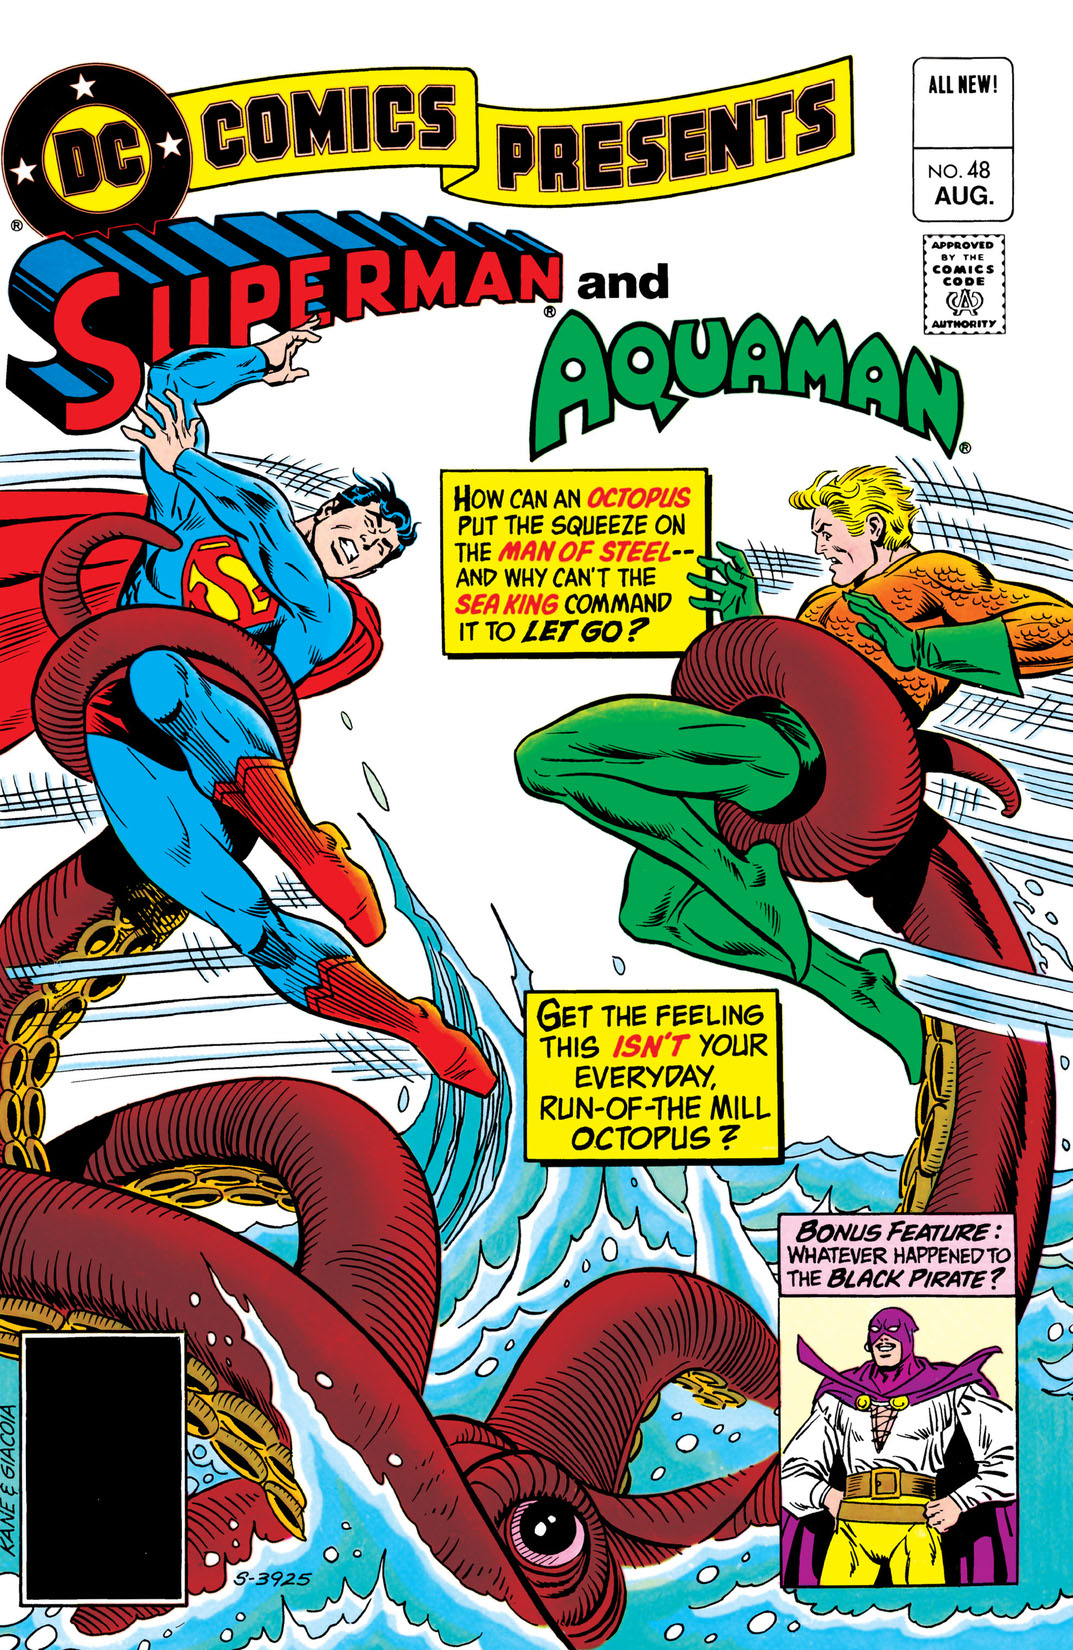 DC Comics Presents (1978-1986) #48 preview images